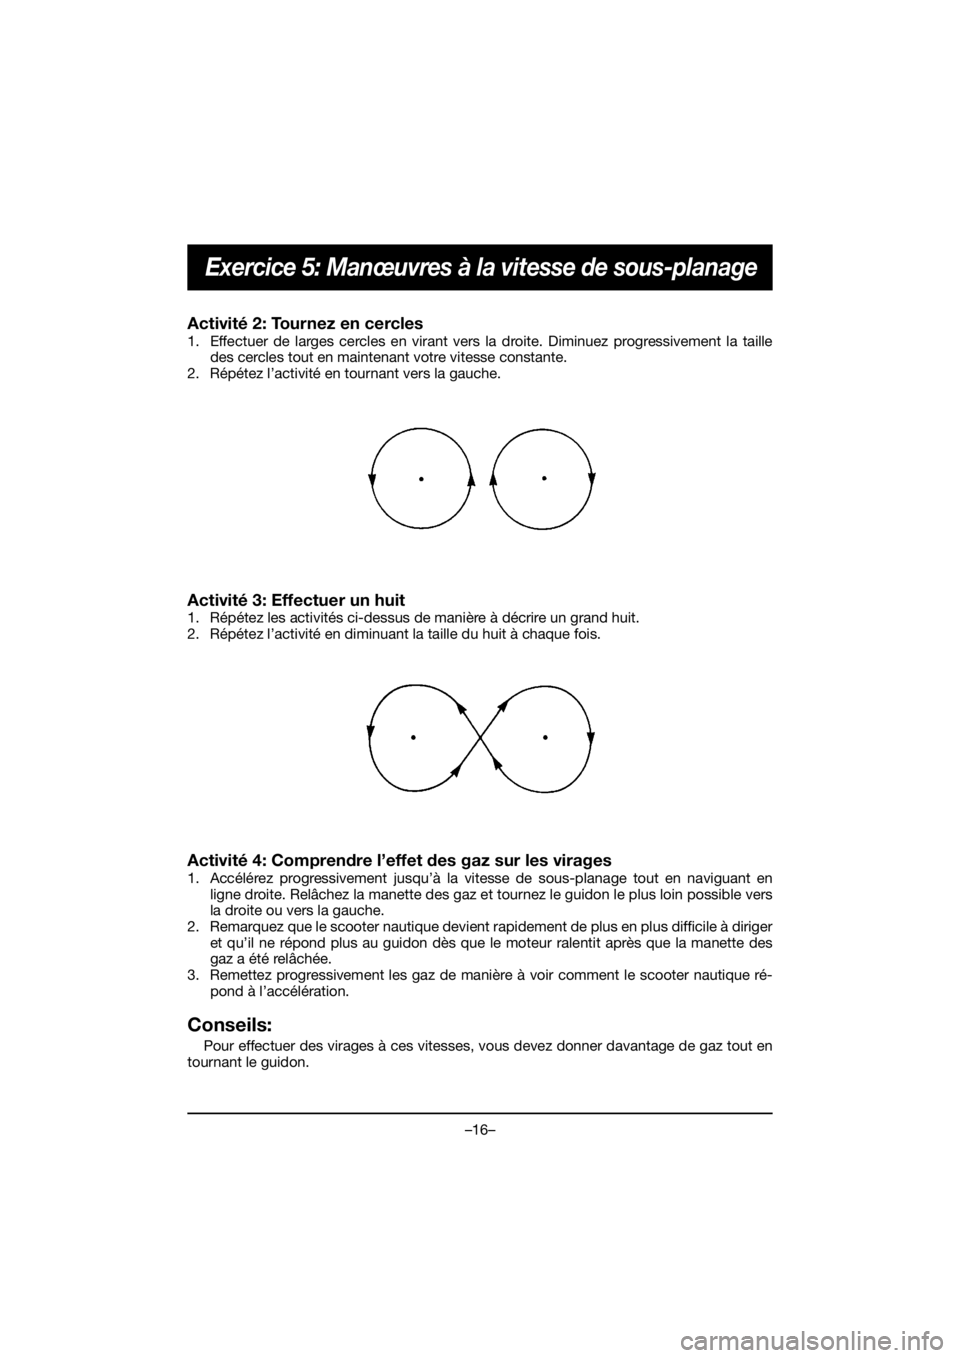 YAMAHA VX CRUISER HO 2020  Manuale duso (in Italian) –16–
Exercice 5: Manœuvres à la vitesse de sous-planage
Activité 2: Tournez en cercles 
1. Effectuer de larges cercles en virant vers la droite. Diminuez progressivement la taille
des cercles t